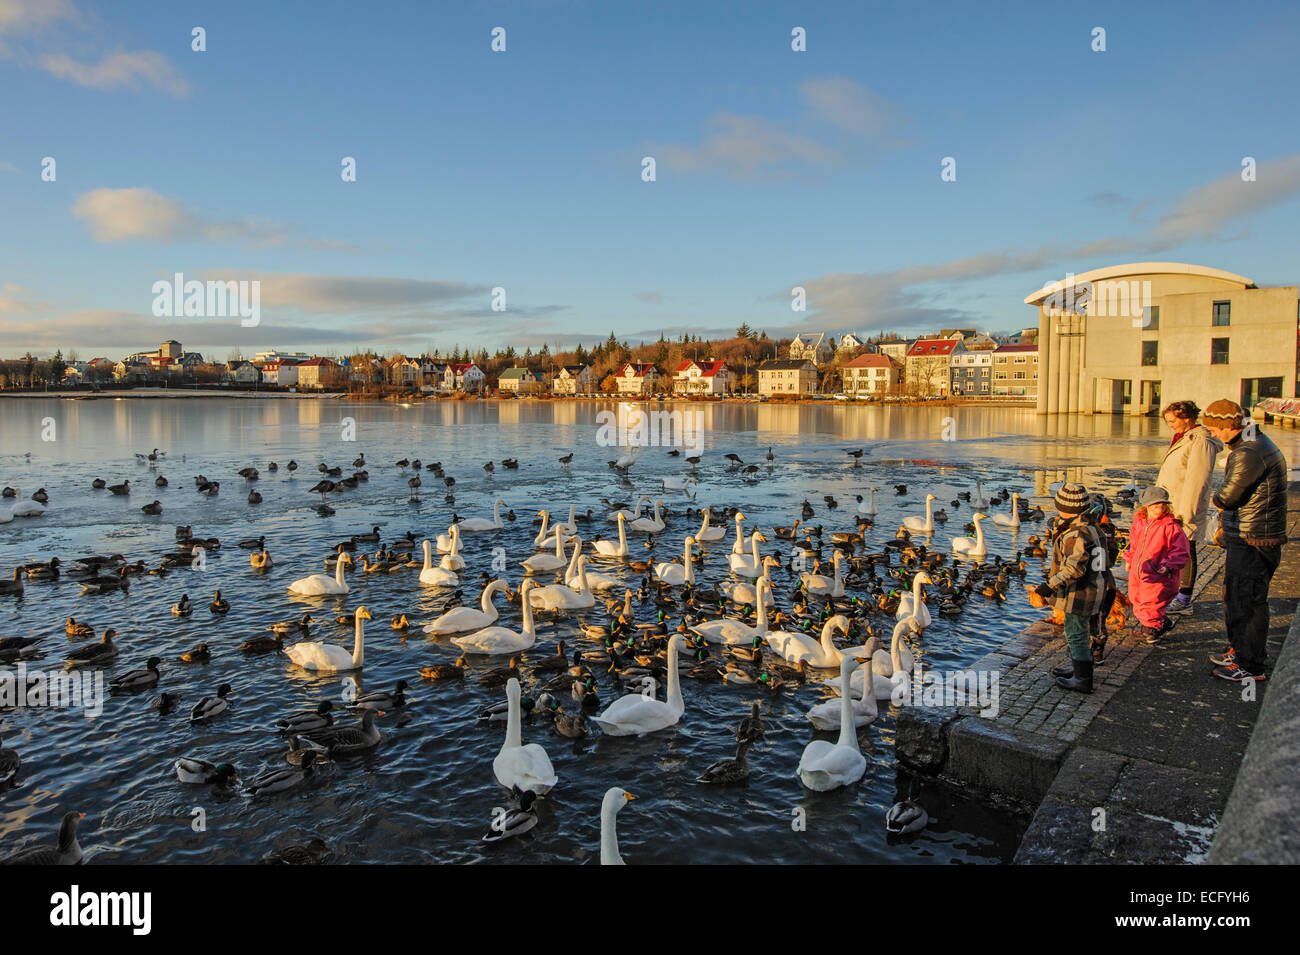 (L'Étang Tjörnin) Reykjavik, Islande. Novembre 2012. L'alimentation des gens de cygnes chanteurs (Cygnus cygnus) et d'autres oiseaux aquatiques. Banque D'Images